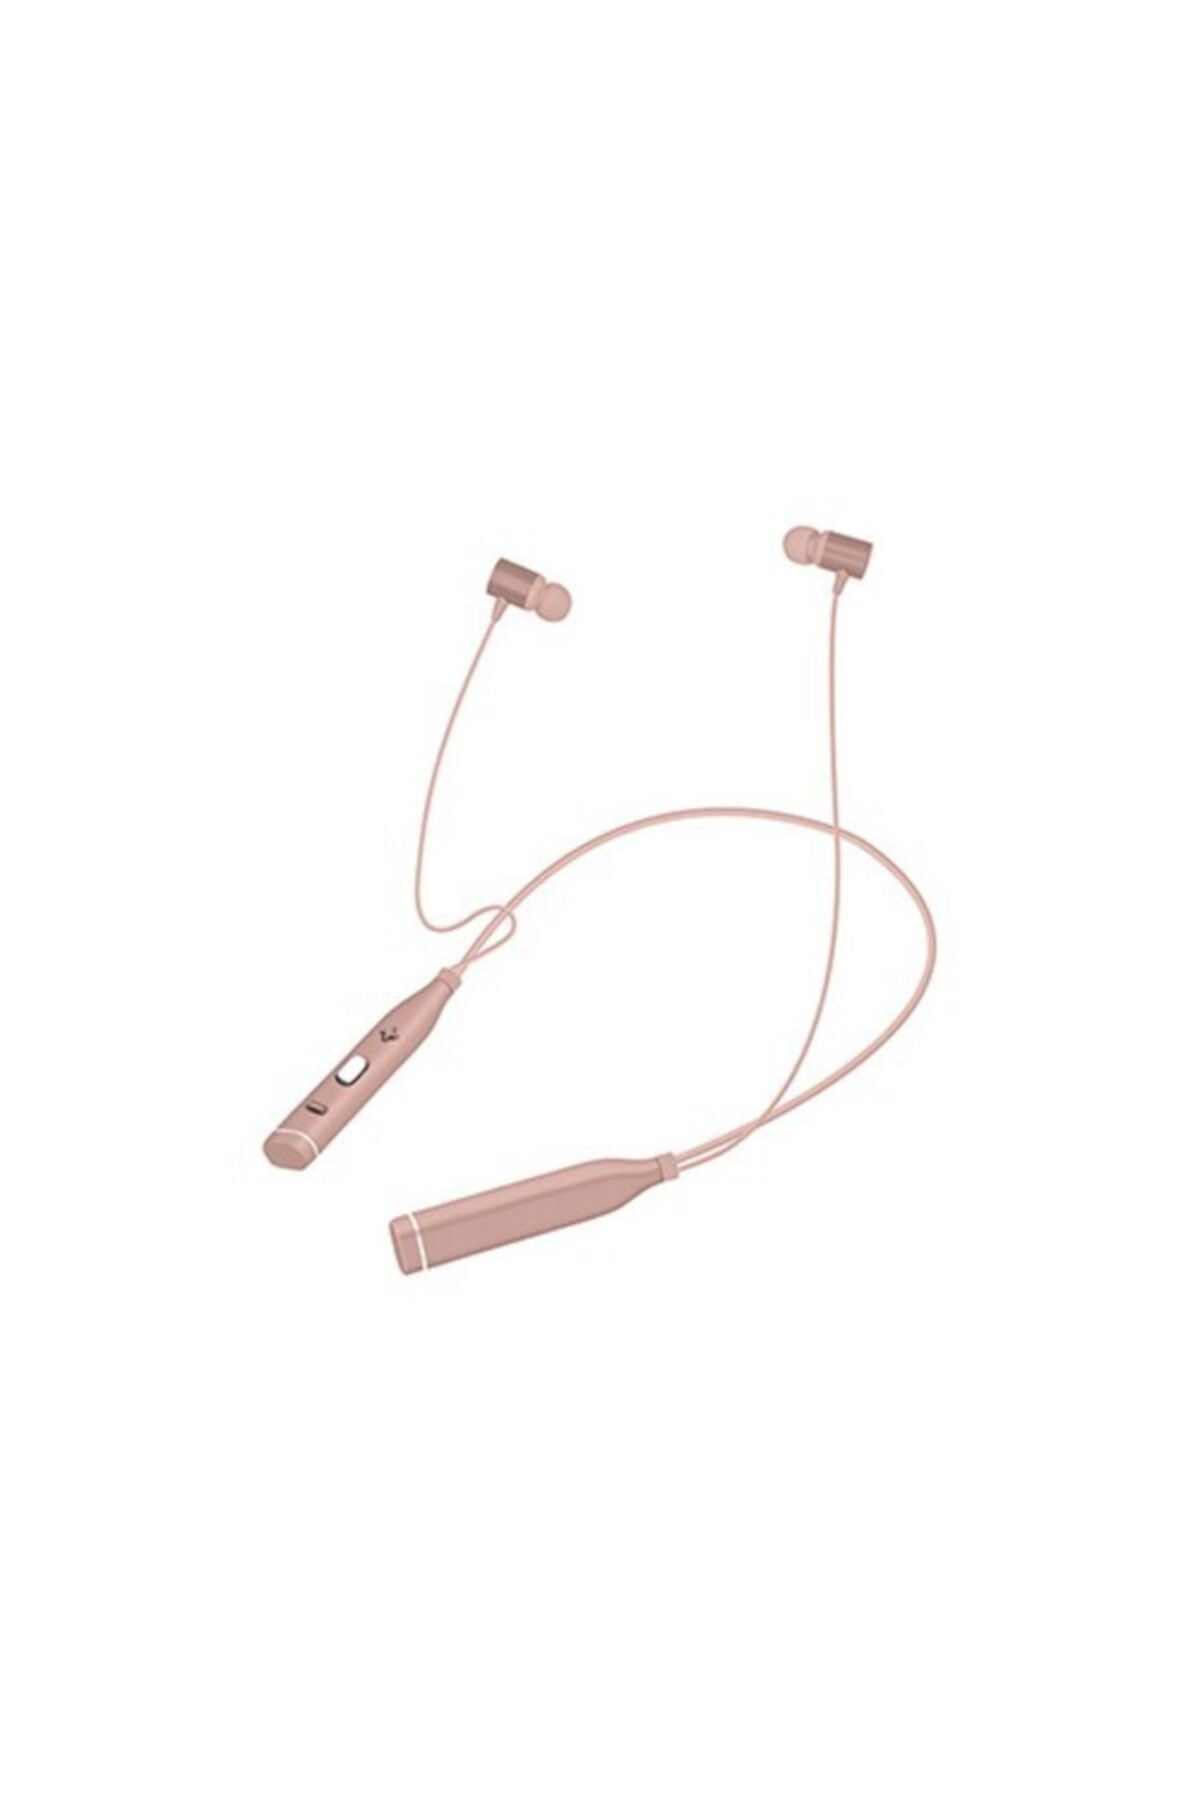 Snopy Sn-bts20 Rose Gold Boyun Askılı Mıknatıslı Mikrofonlu Spor Bluetooth Kulaklık